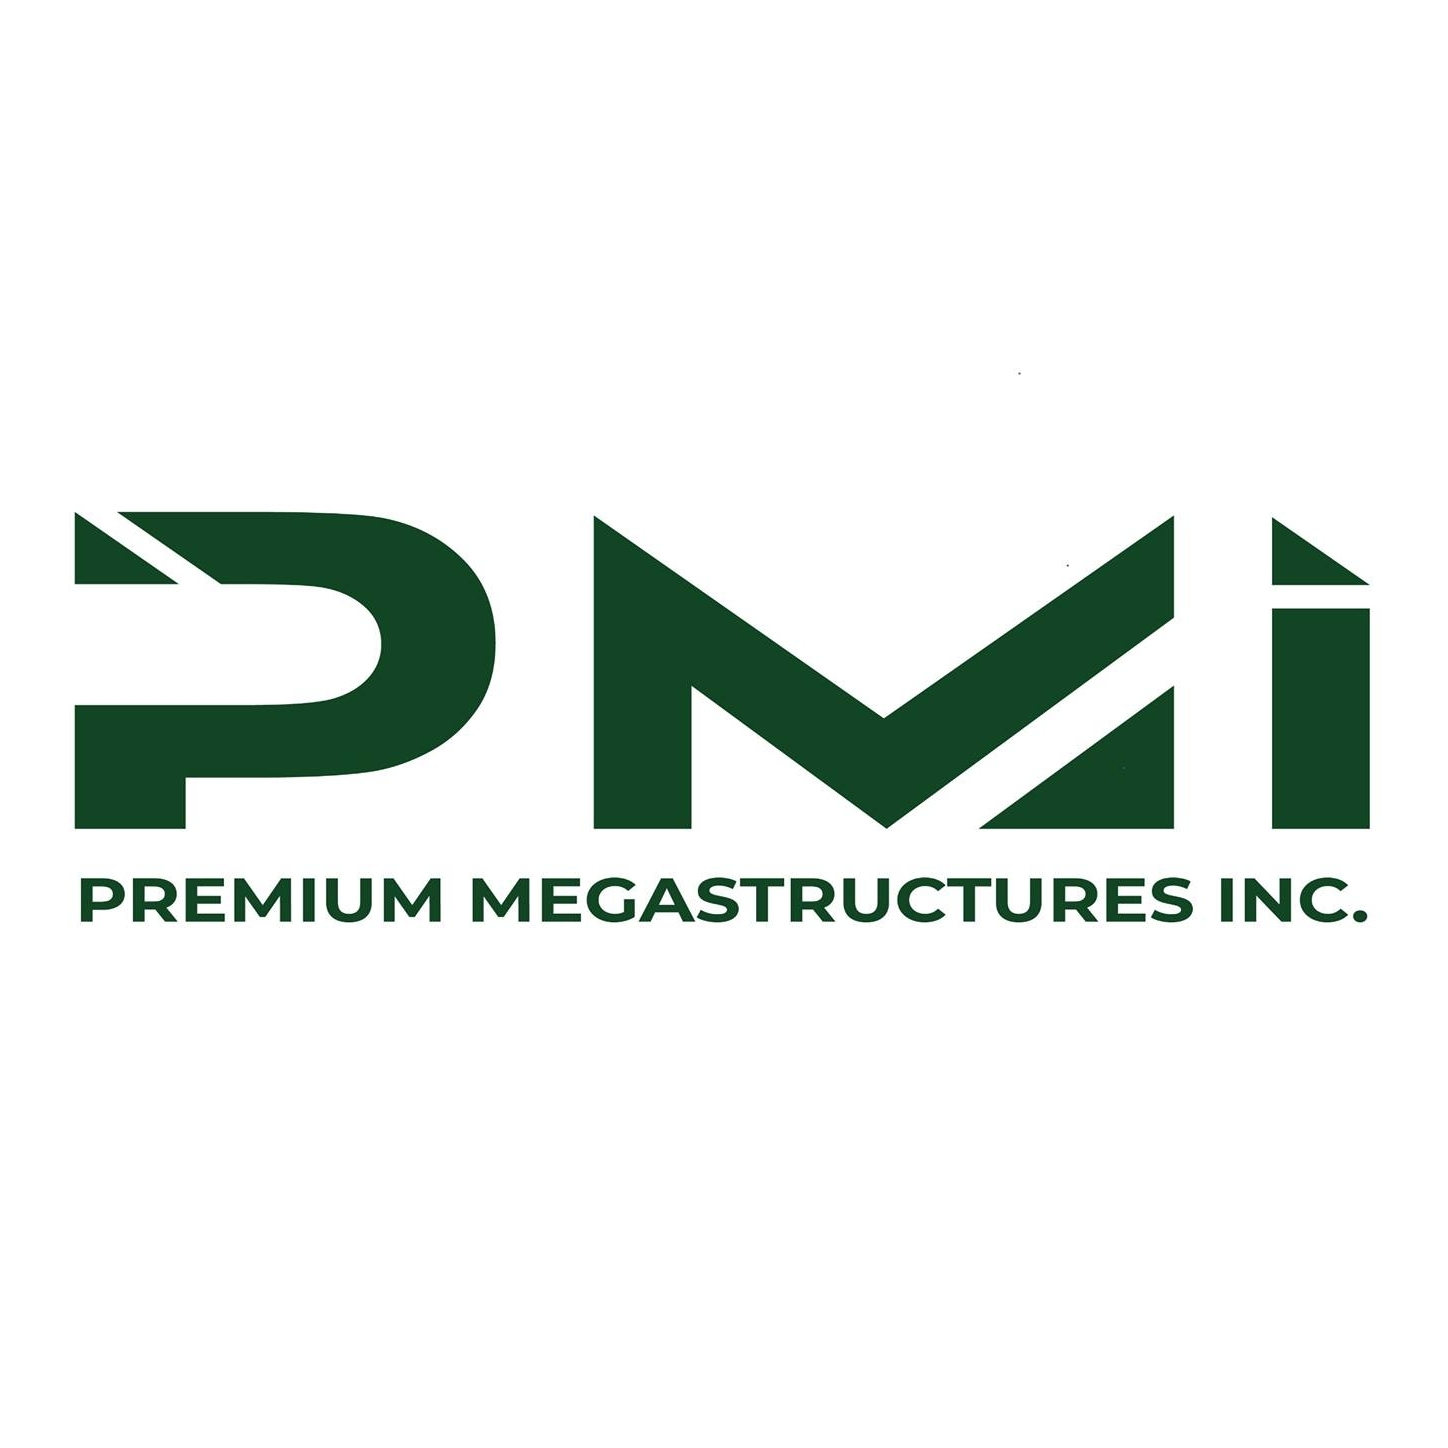 Premium Megastructures